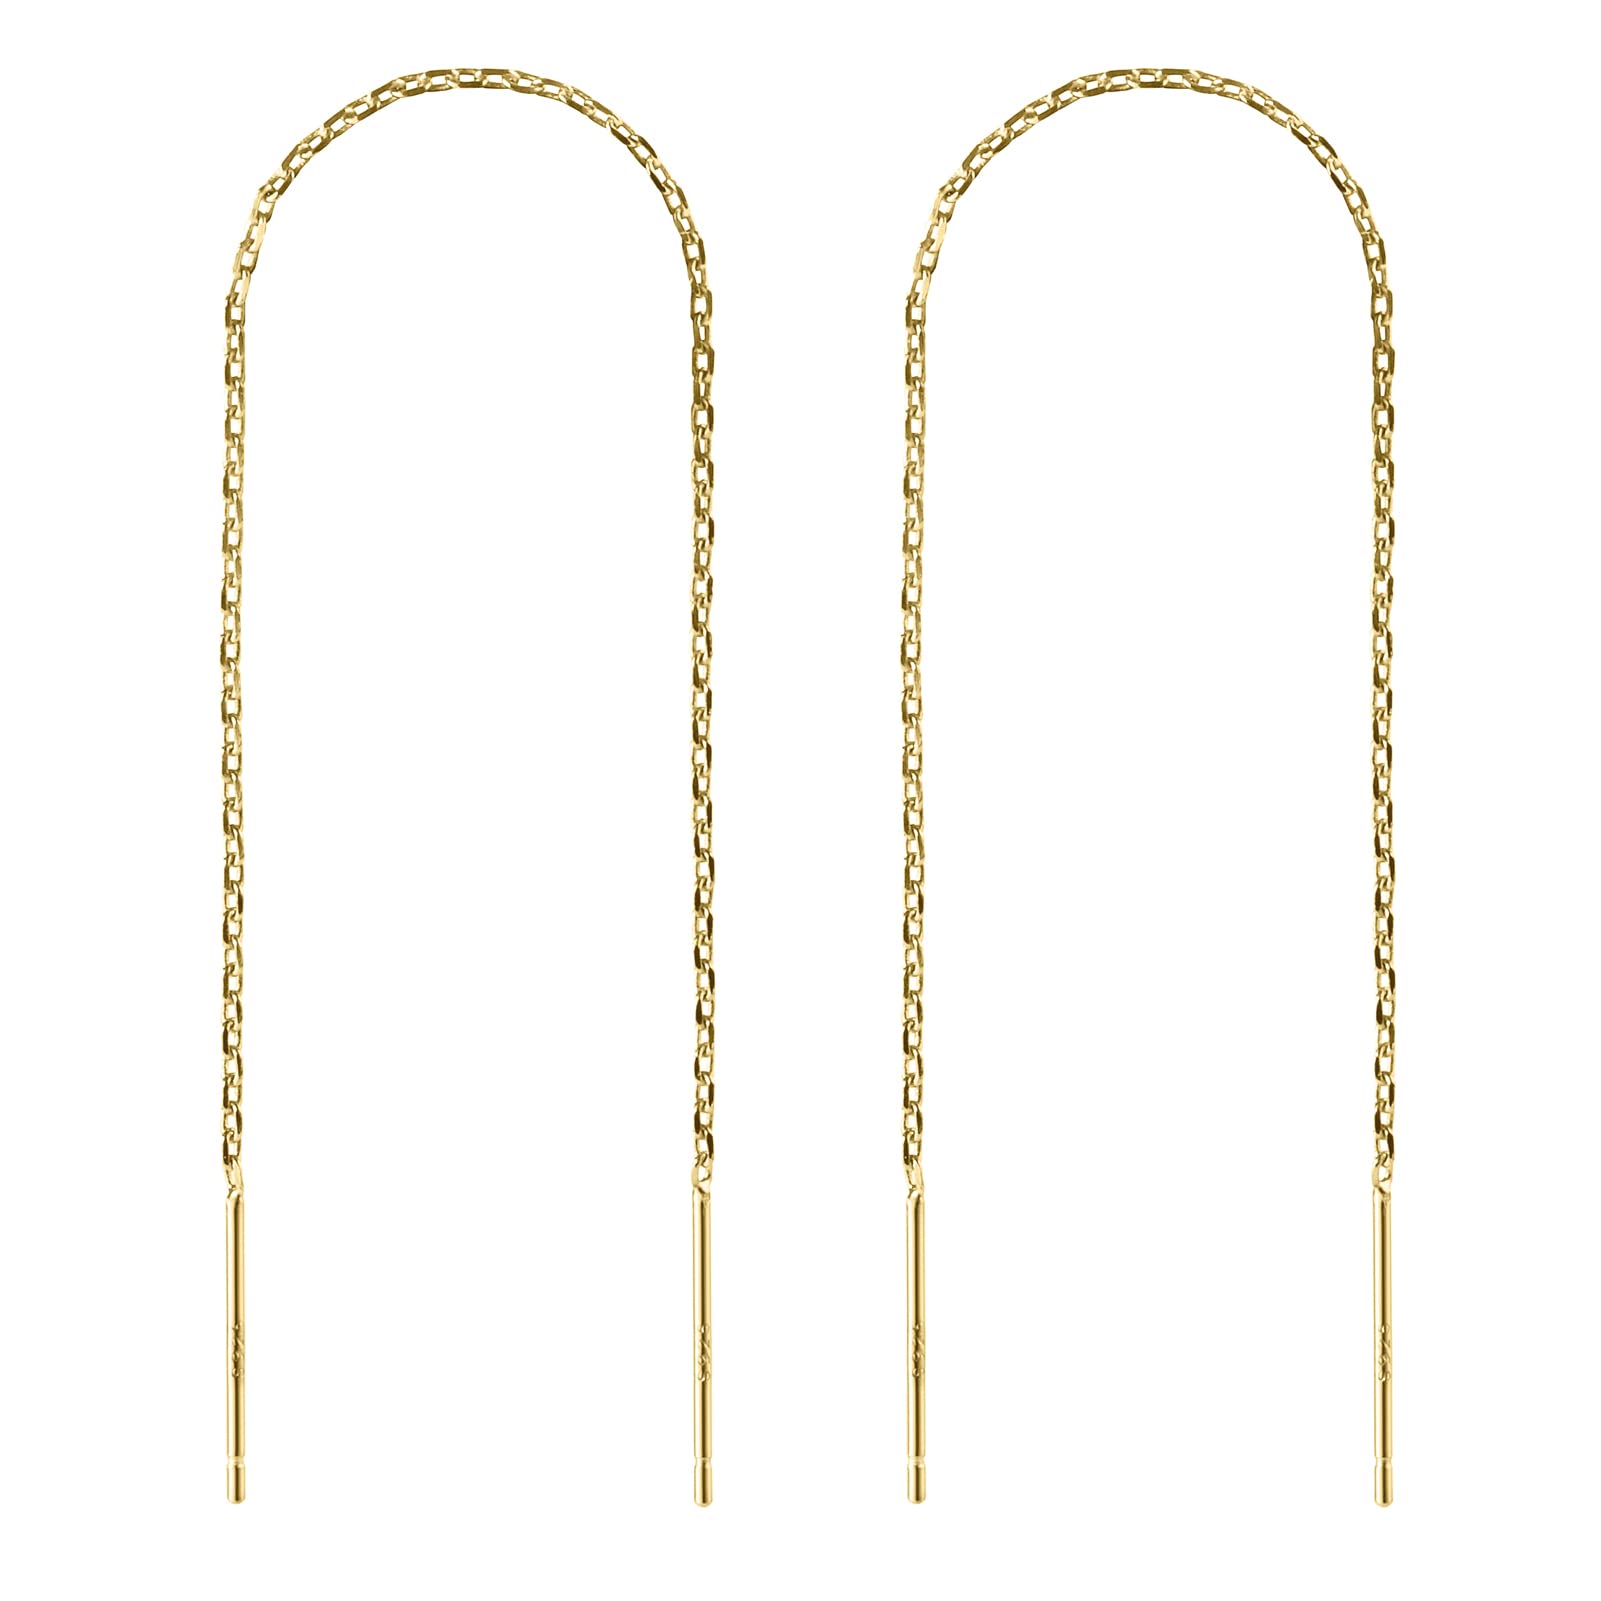 Gold Threader Earrings for Women 18K Gold Filled Chain Earrings Dainty Bar Drop Dangle Long Thread Earring Dangly Double Piercing Hypoallergenic Jewelry Gift